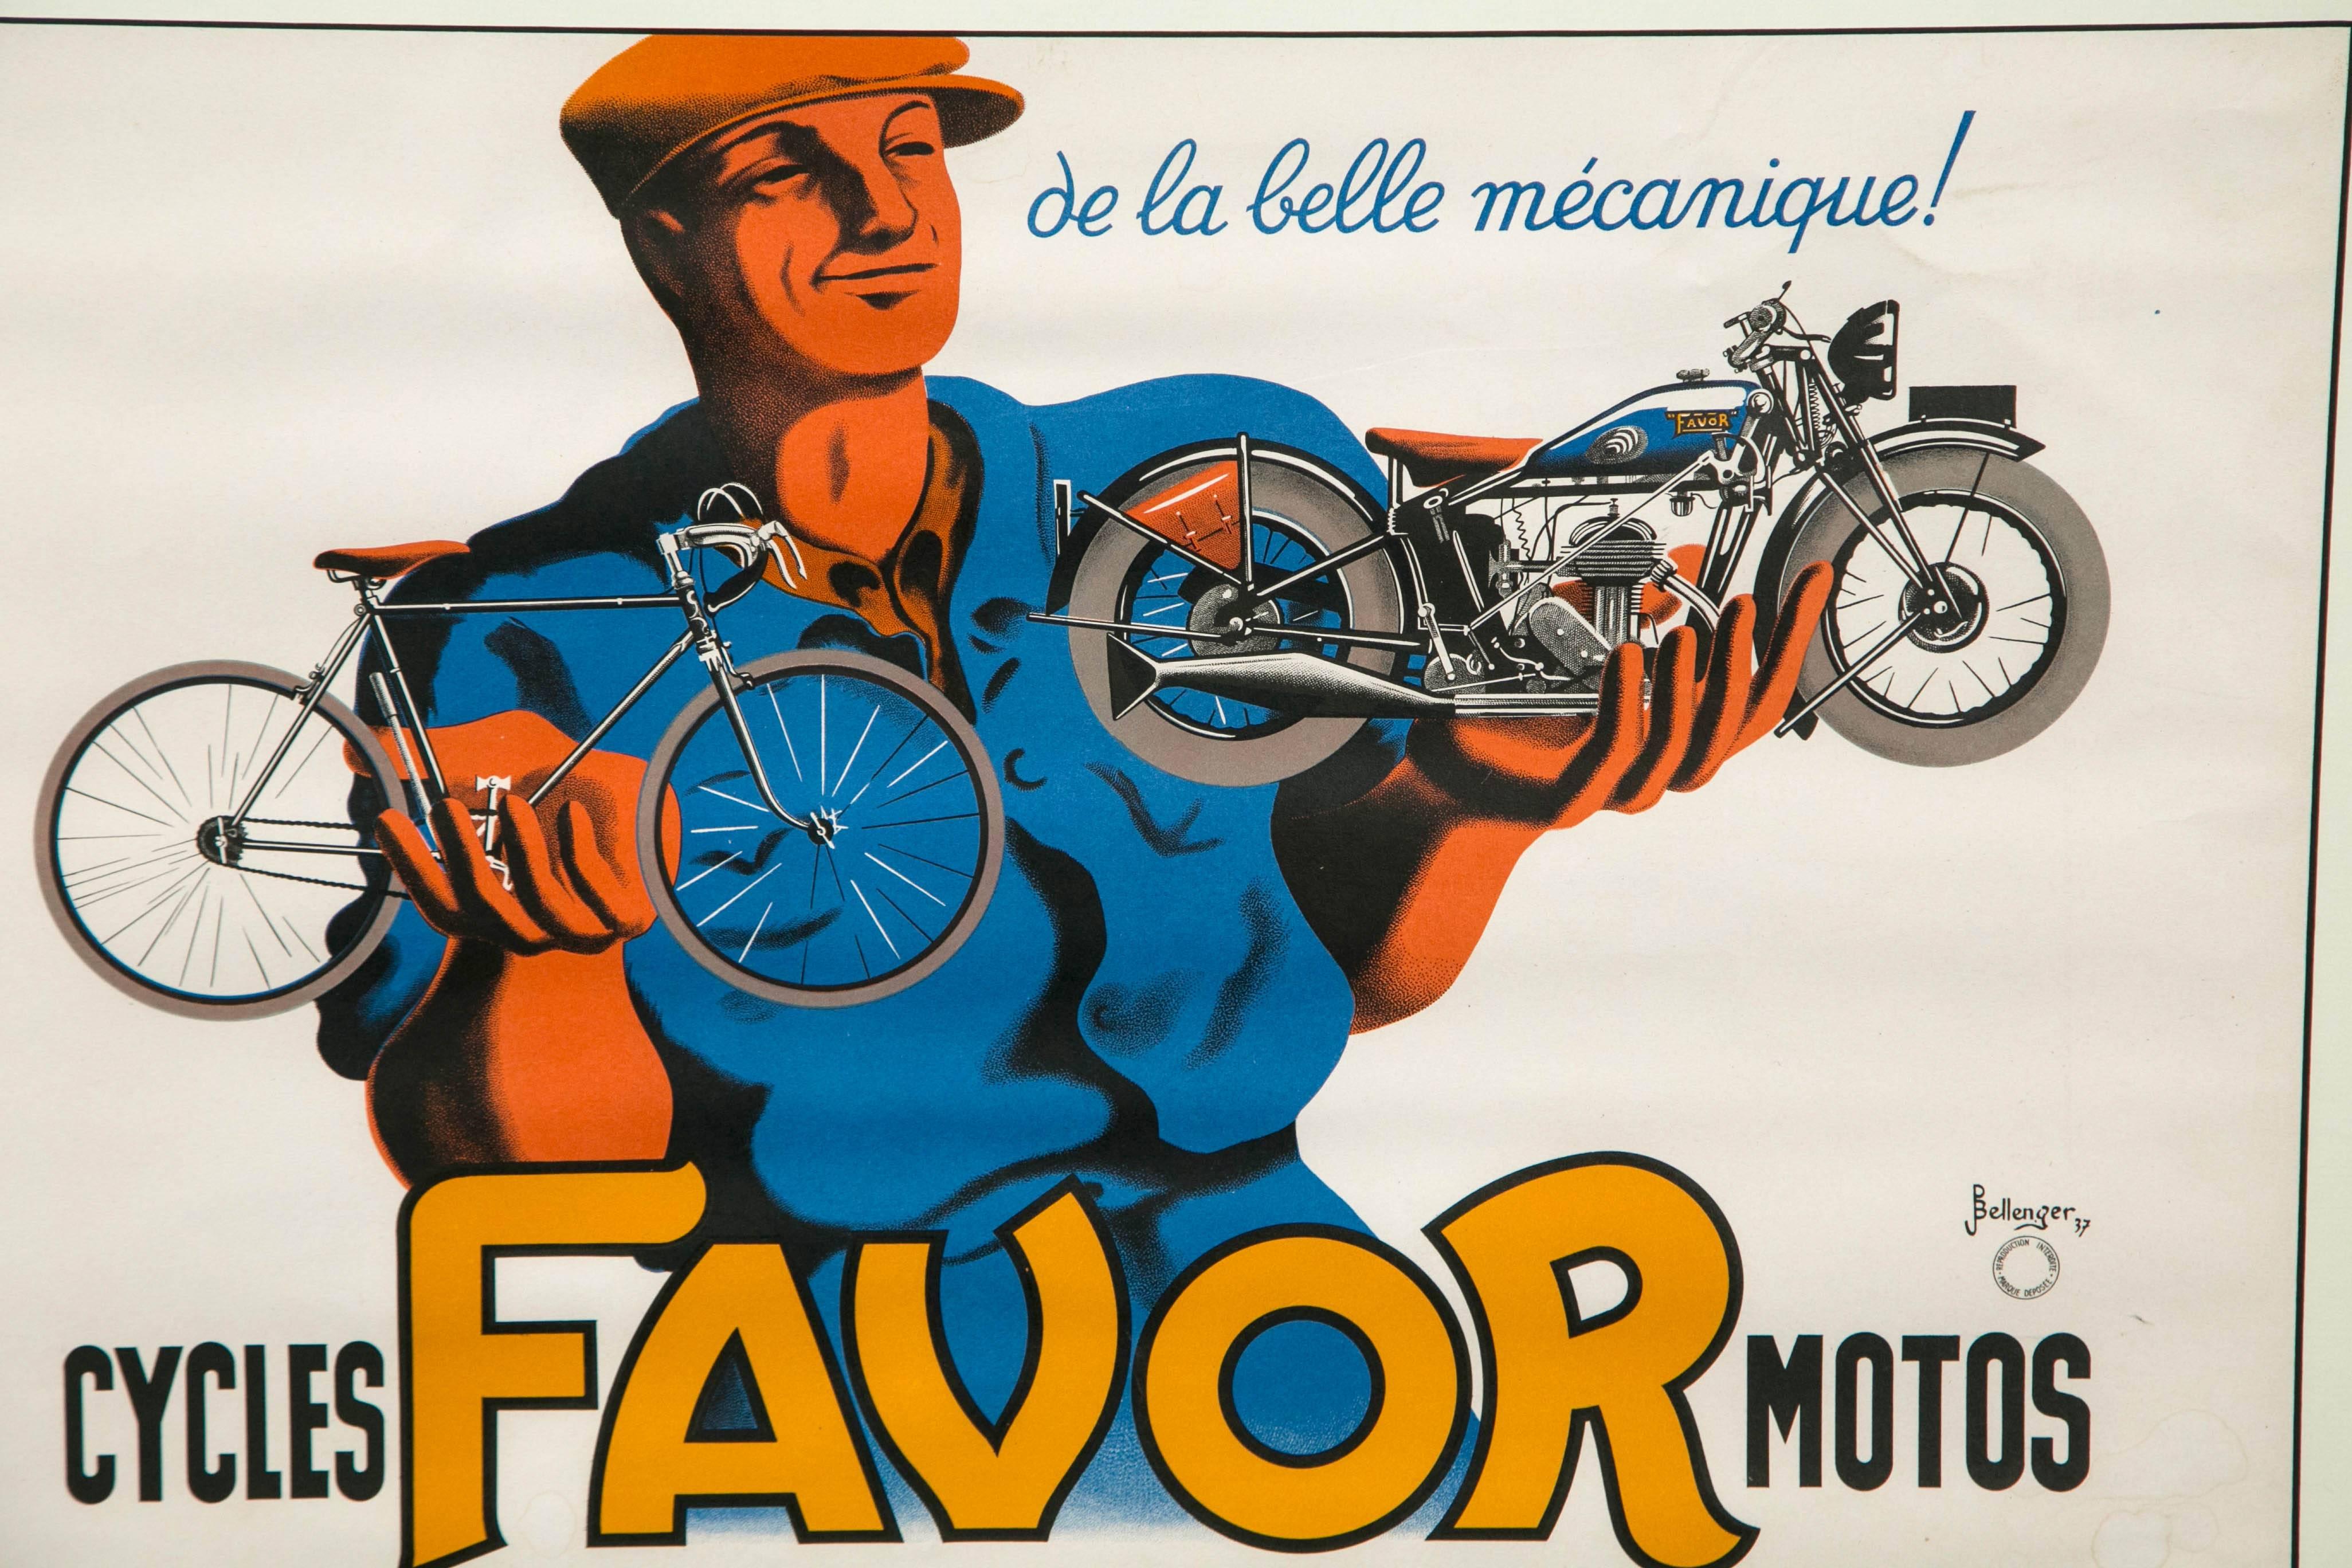 Affiche publicitaire originale de moto pour la société française, Favor by Bellenger datée de 1937. Nouvellement encadré et mis sous passe-partout. Il a conservé ses couleurs vives et ses détails d'origine.